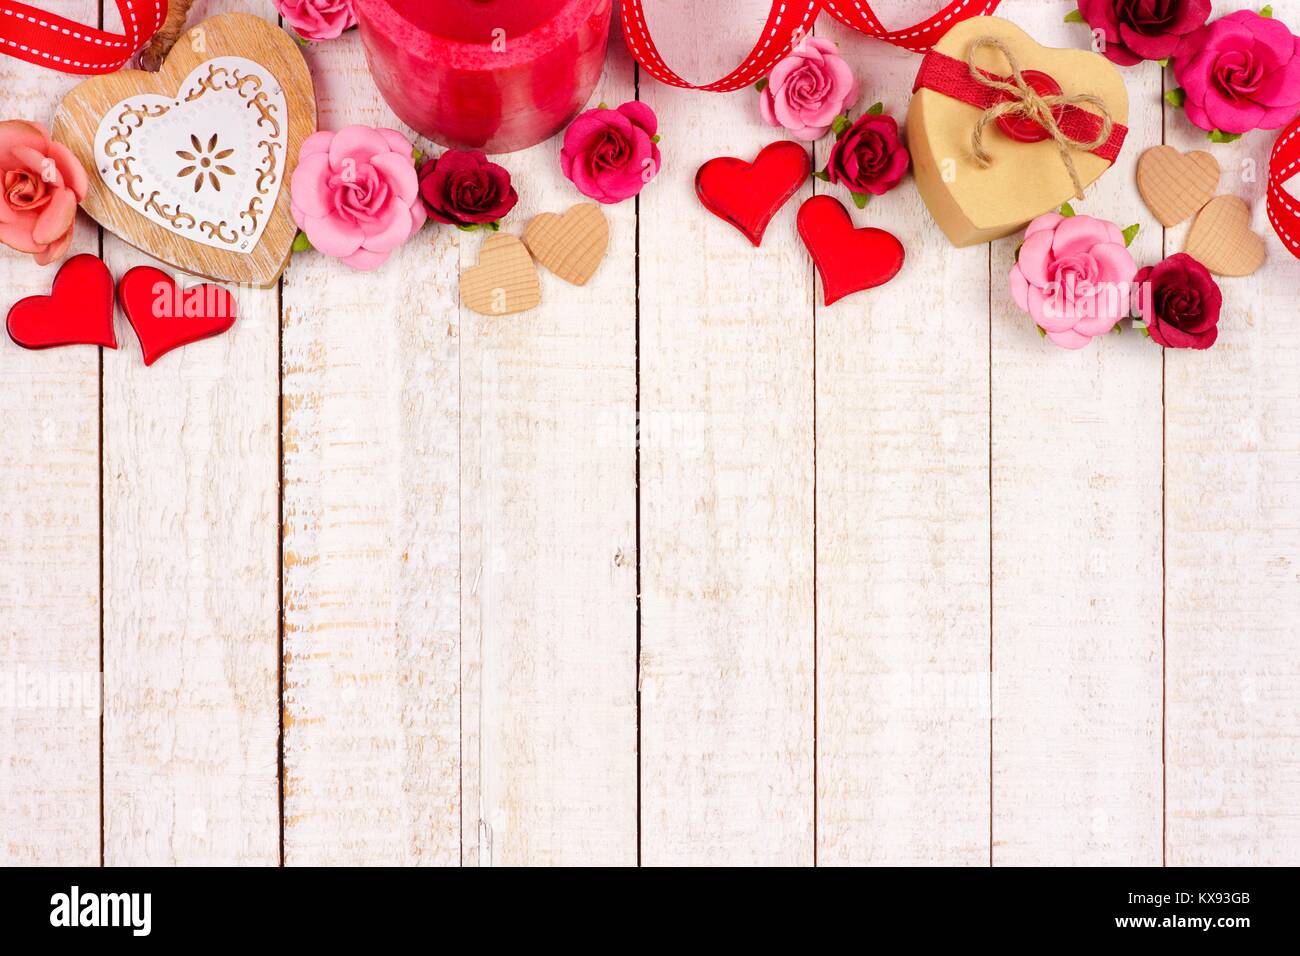 Día De San Valentín Corazones De Madera Y Cartas De Amor Que Forman Una  Frontera Lateral En Madera Rústica Fotos, retratos, imágenes y fotografía  de archivo libres de derecho. Image 51098077